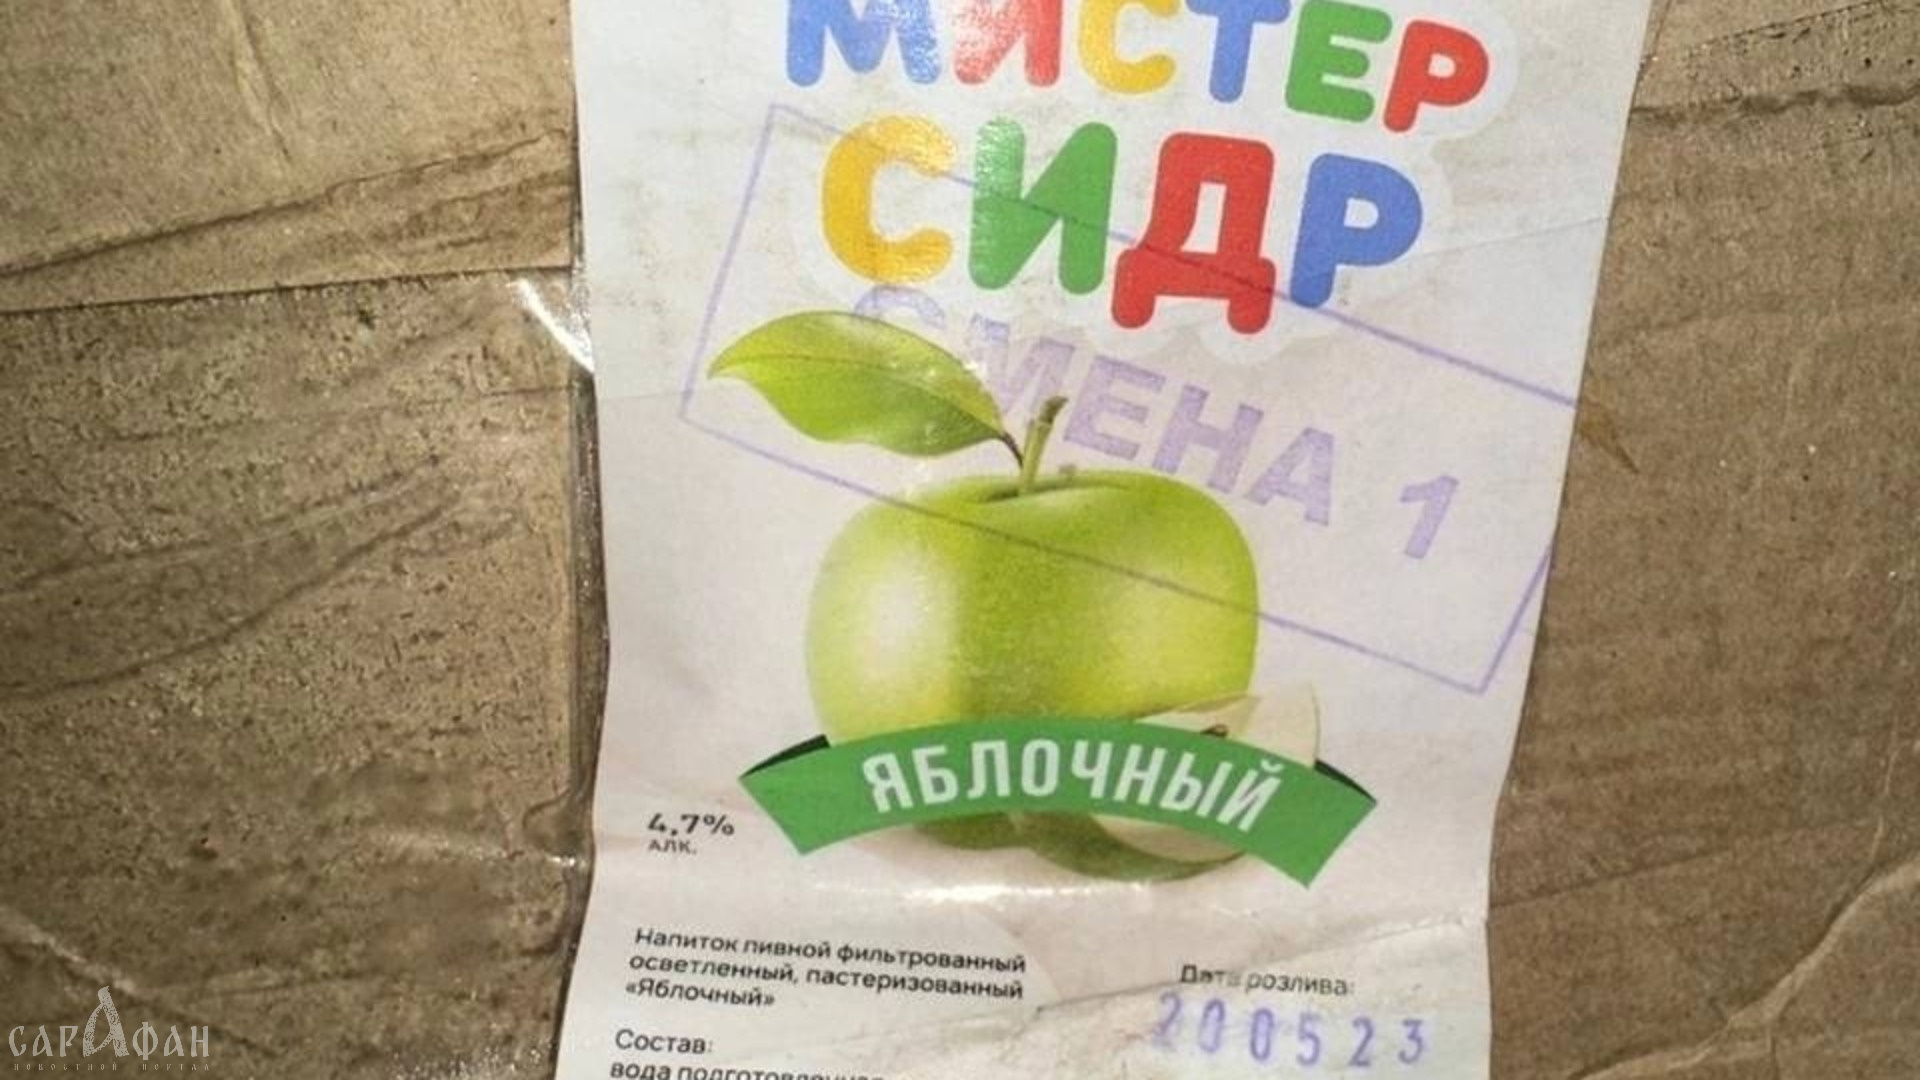 В Волгоградской области обнаружили партии напитка "Мистер Сидр"